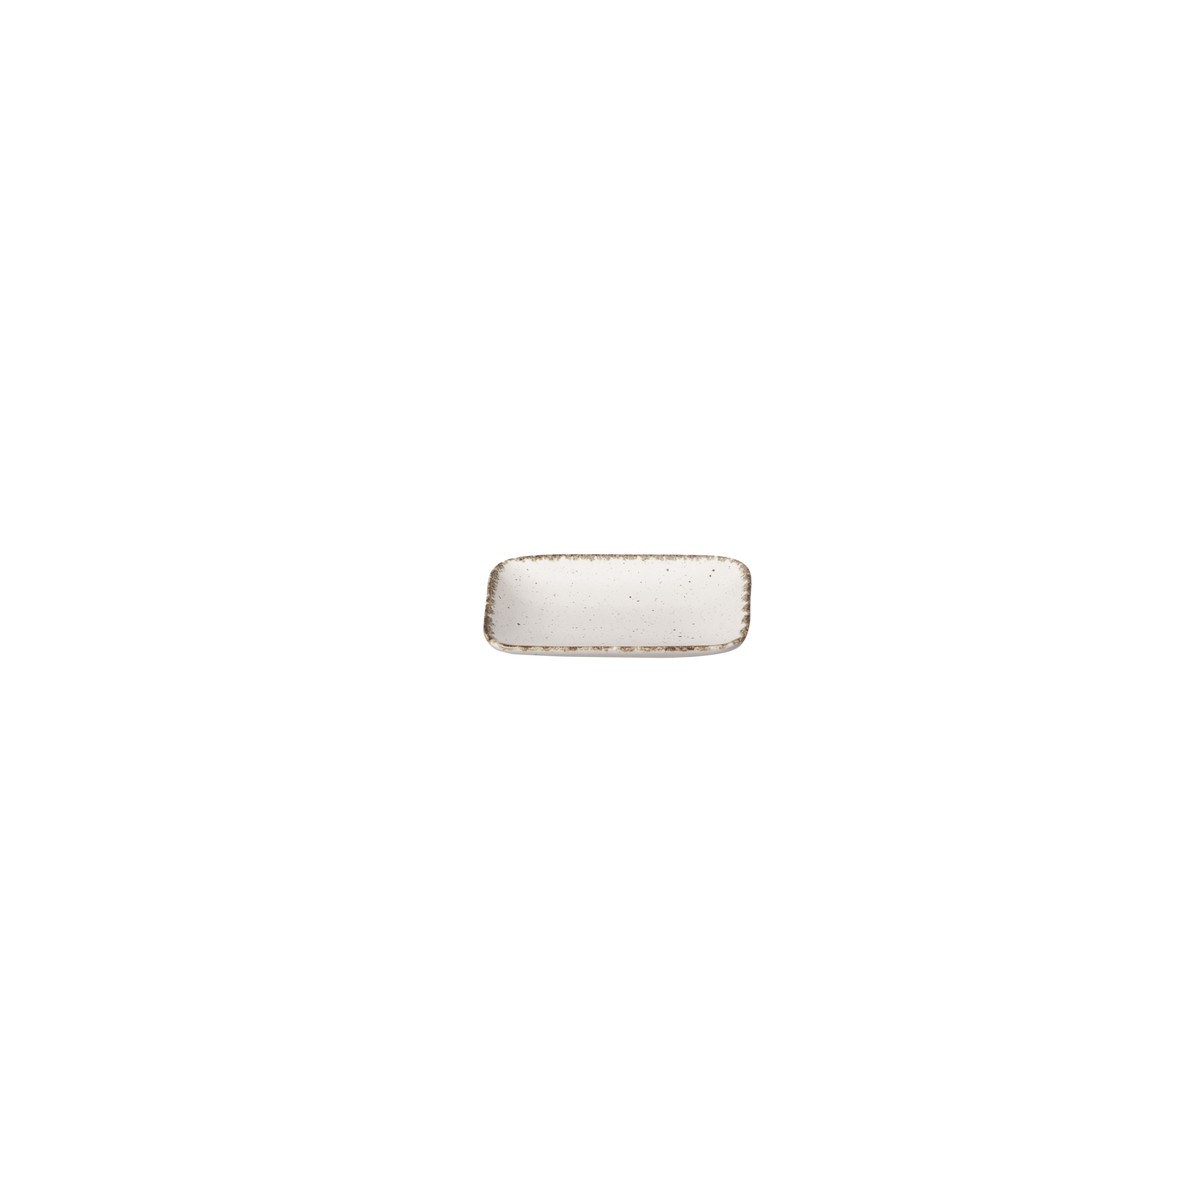  TOSCANA Porte-savon Toscana COR131-CRM Blanc crème 13 cm